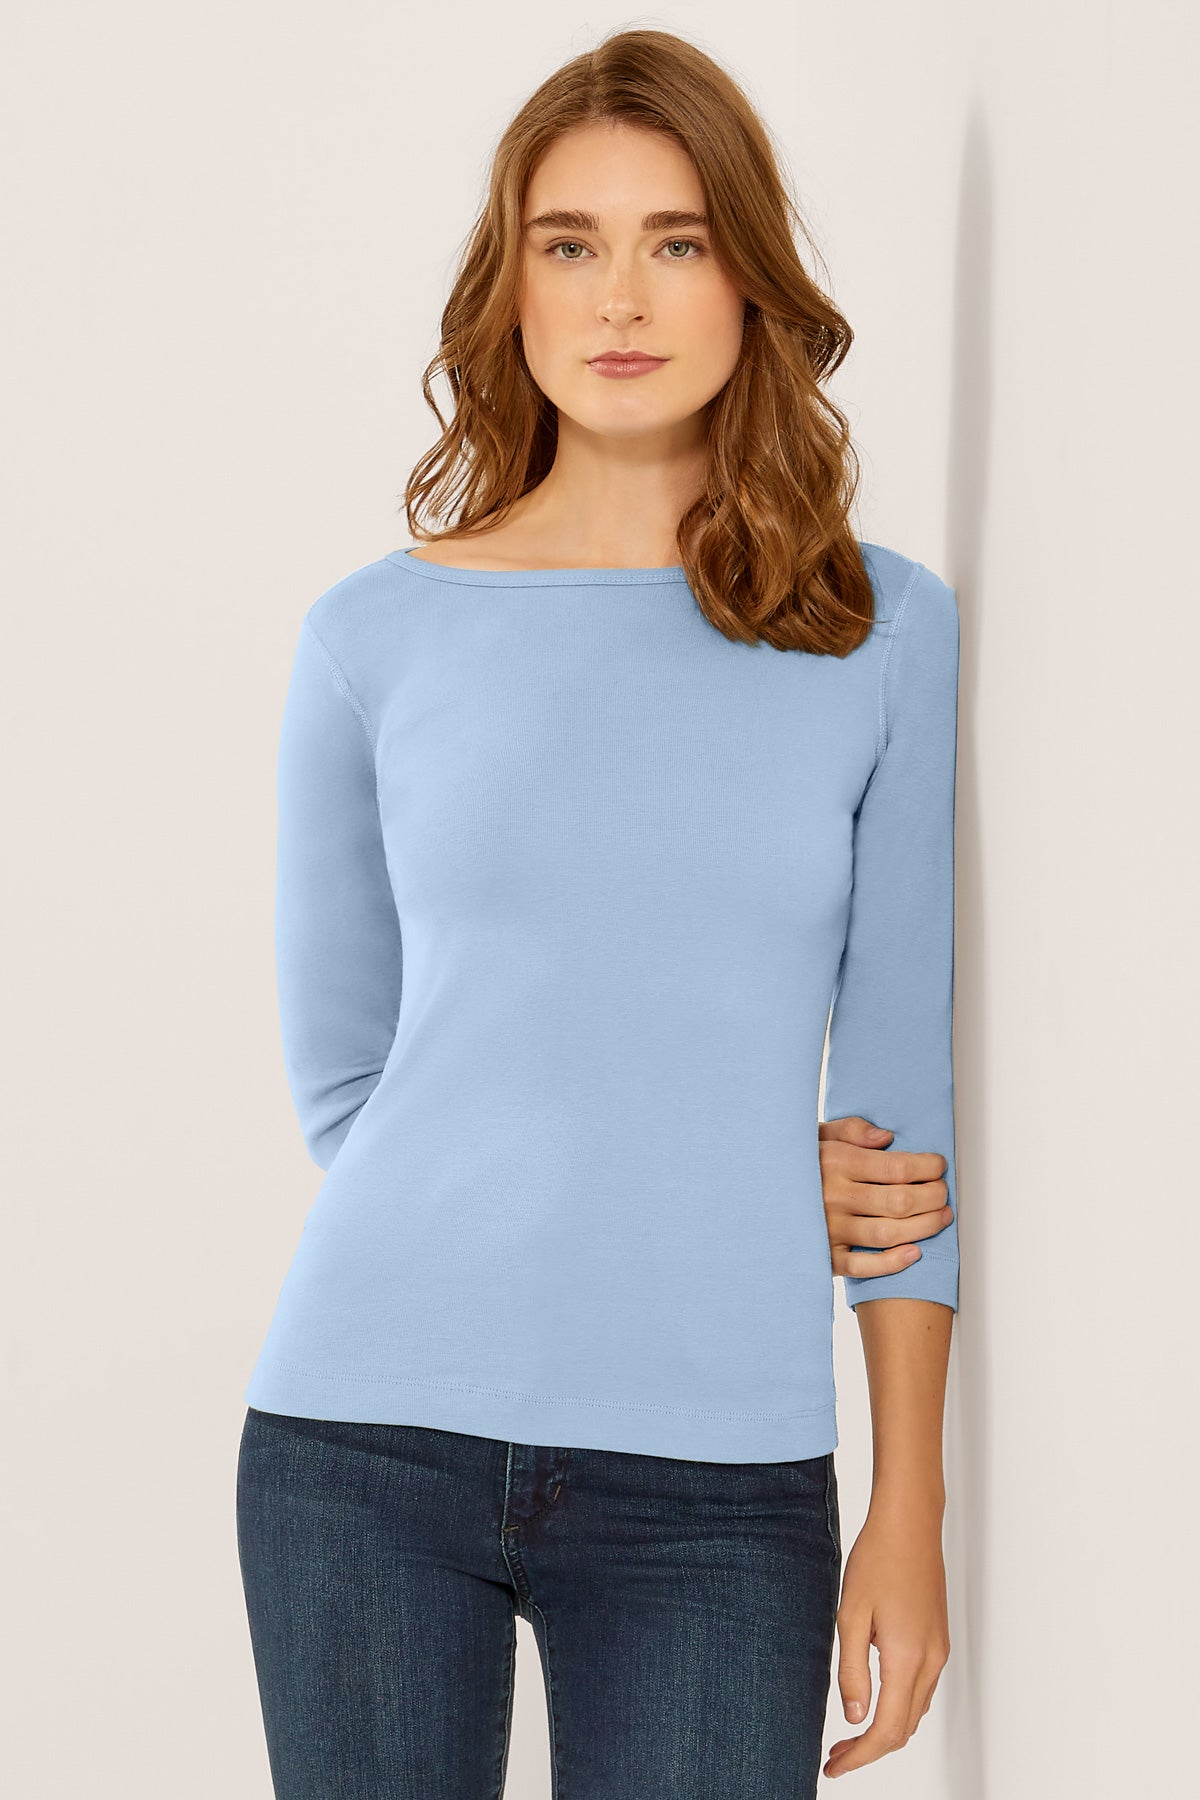 Women's Open Collar Fitted Shirt (3/4 Sleeve)